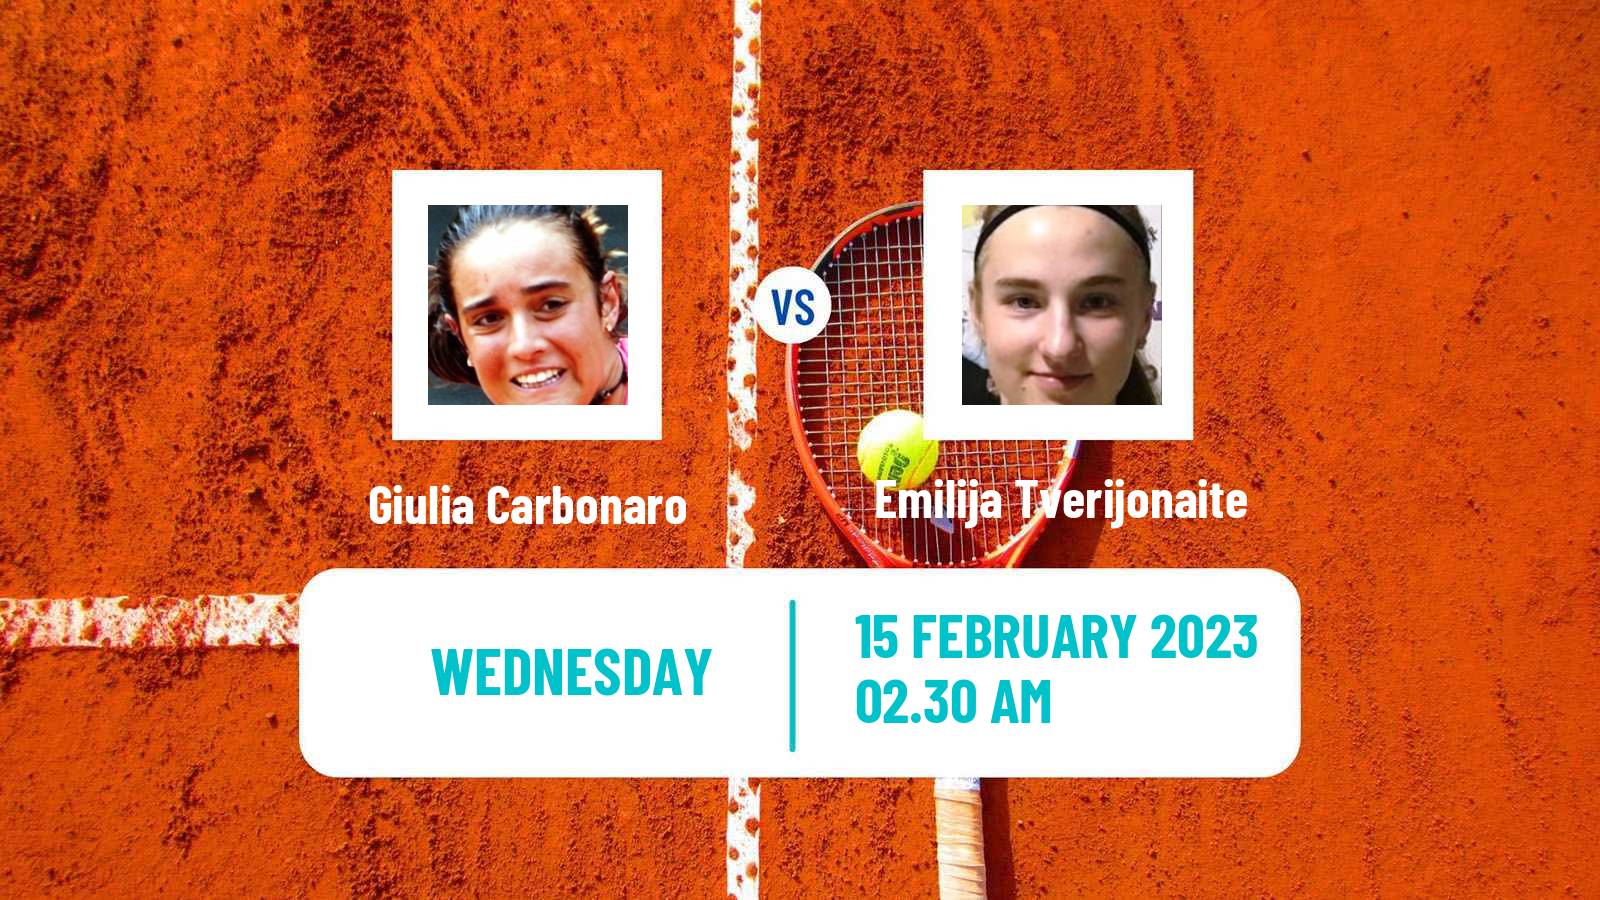 Tennis ITF Tournaments Giulia Carbonaro - Emilija Tverijonaite